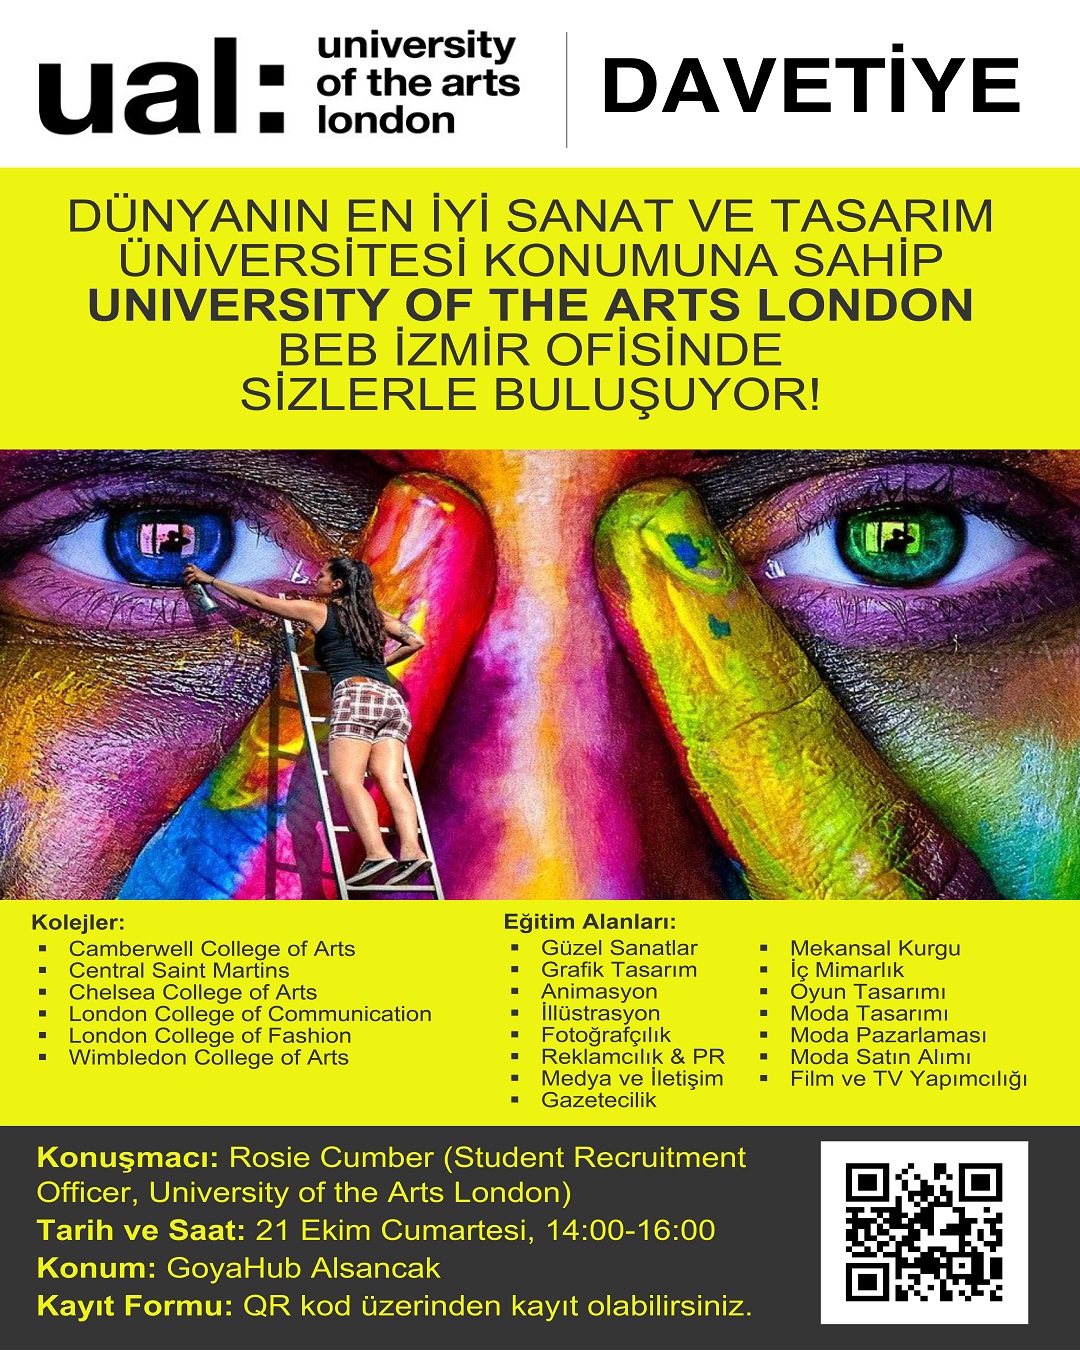 Dünyanın en iyi Sanat ve Tasarım Üniversitesi konumundaki University of the Arts London ile ilgili BEB İzmir Ofisinde düzenlenecek seminerin davetiye görseli